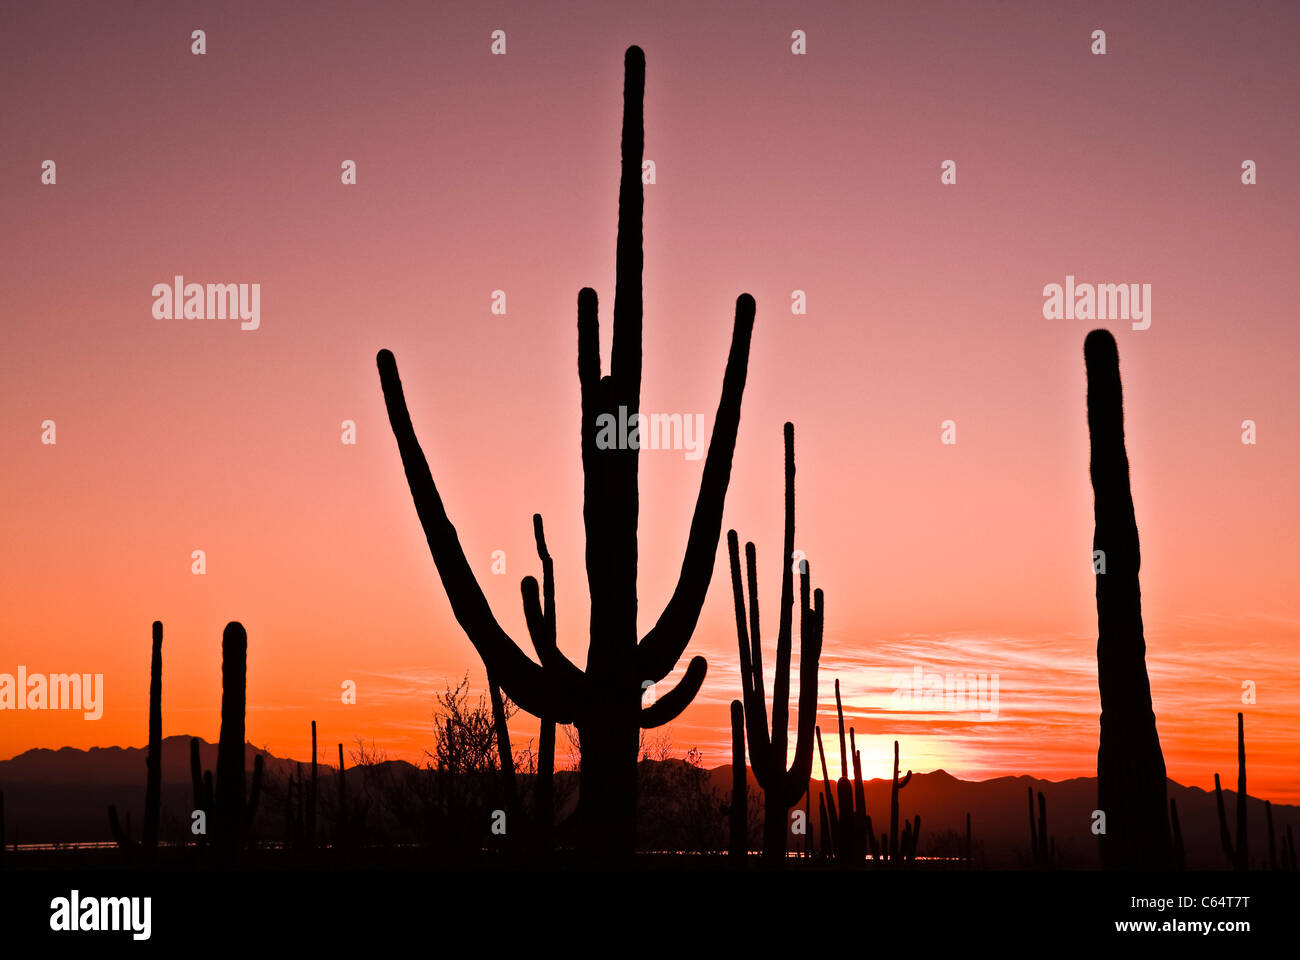 Giant Saguaro Cactus at Saguaro National Park. Arizona.  Sunset. Stock Photo